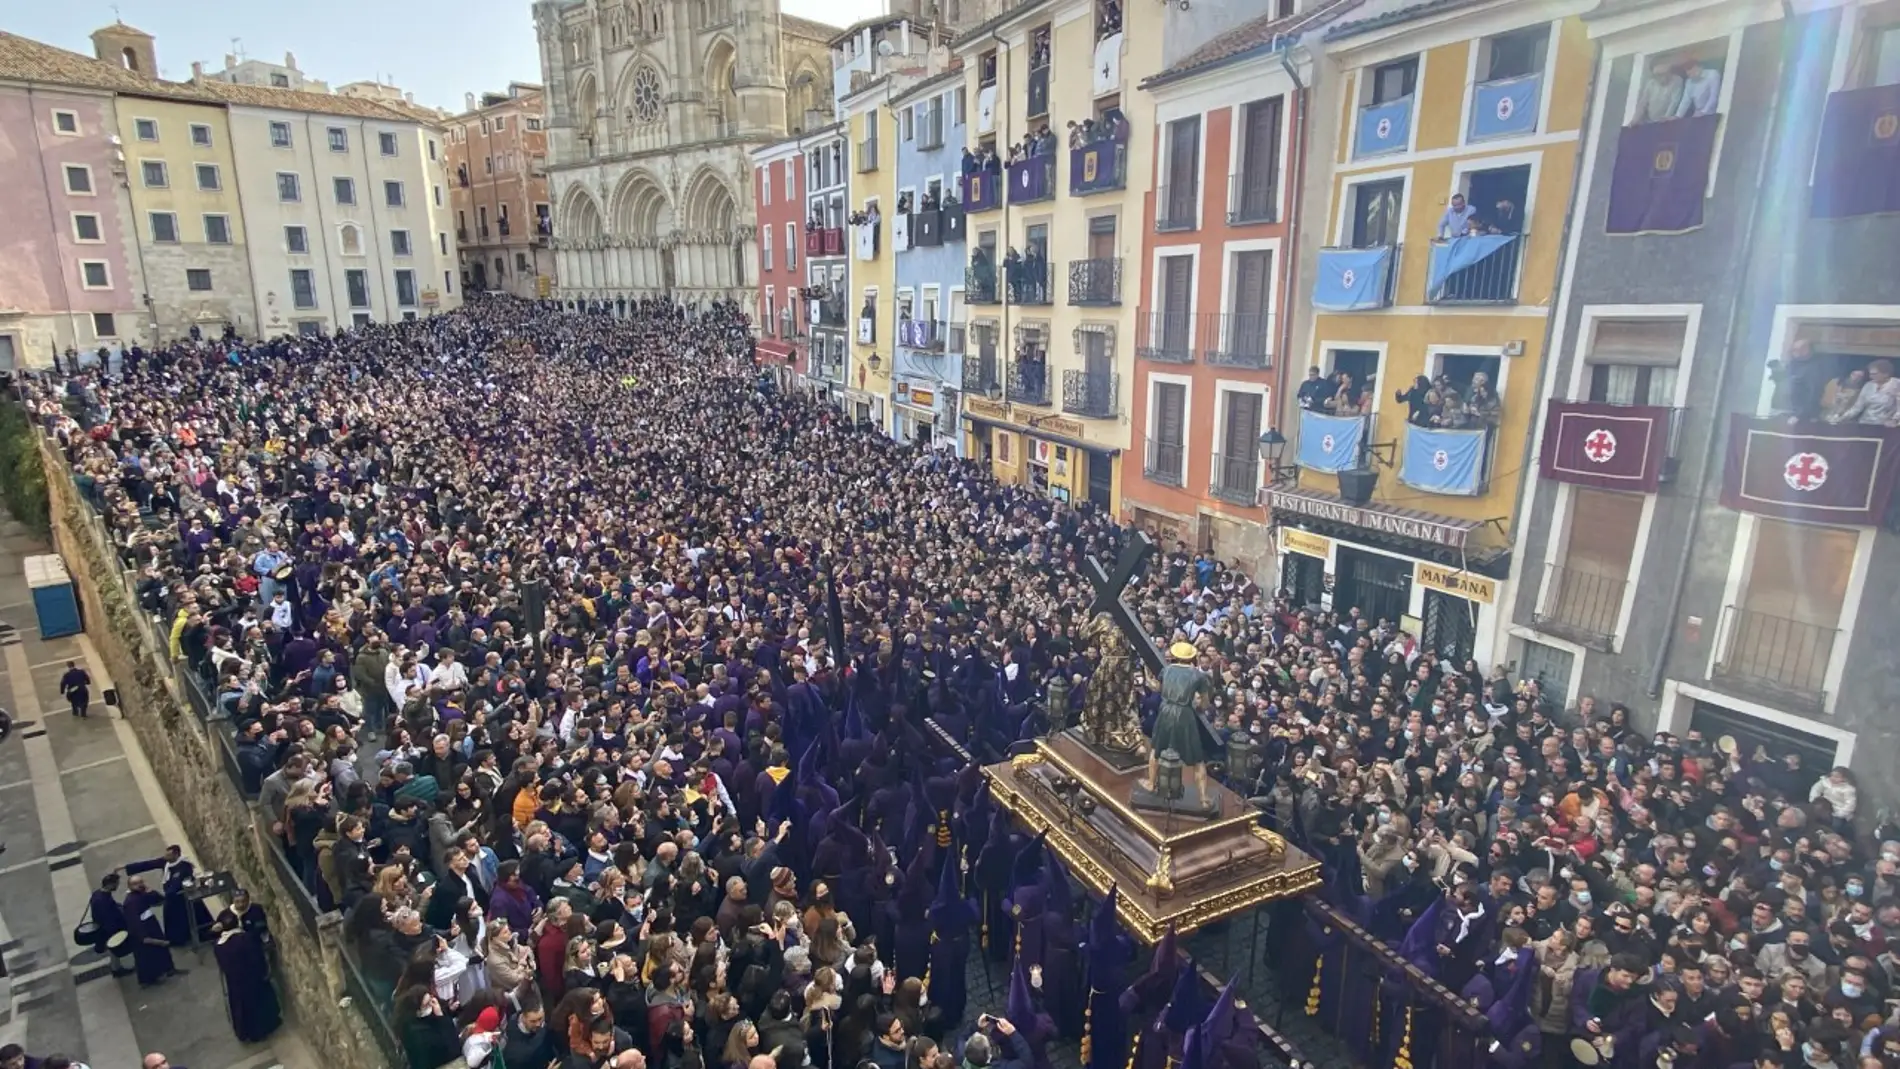 Sesión plenaria Máquina de recepción Ilegible Cuenca vuelve a vibrar con la procesión de Las Turbas | Onda Cero Radio